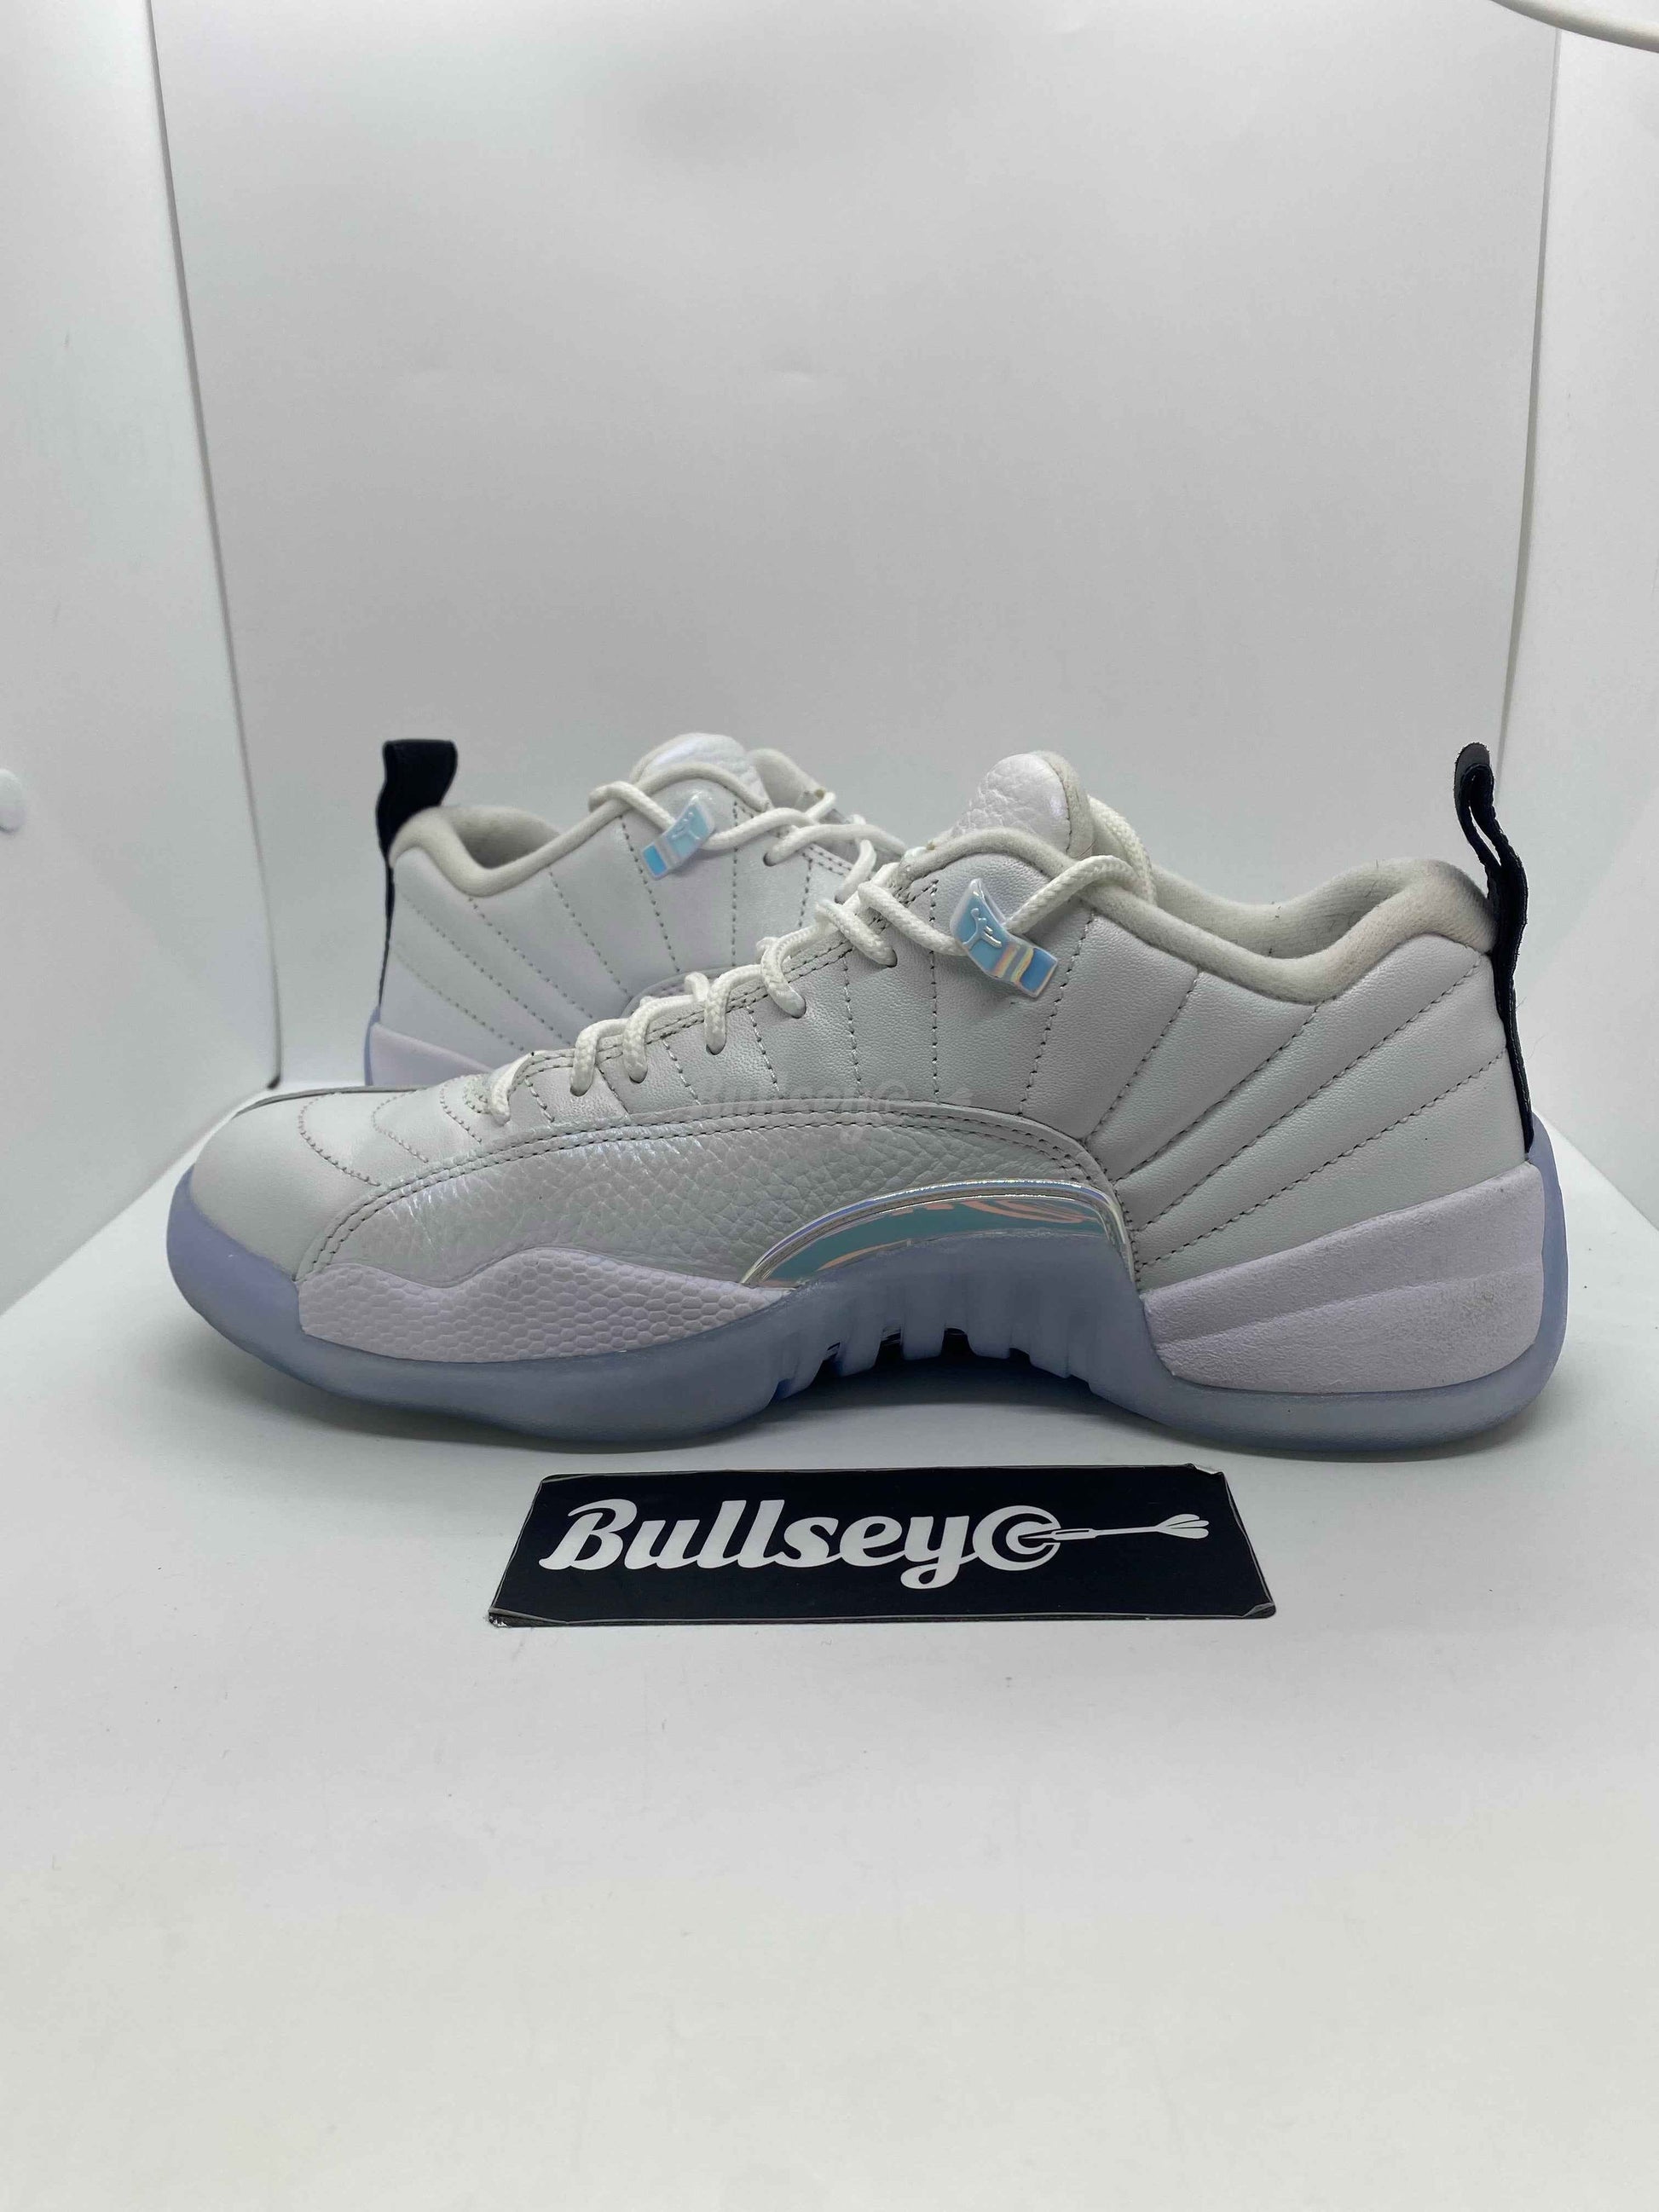 Air Jordan 12 Retro Low "Easter" (PreOwned) - Bullseye Sneaker Boutique